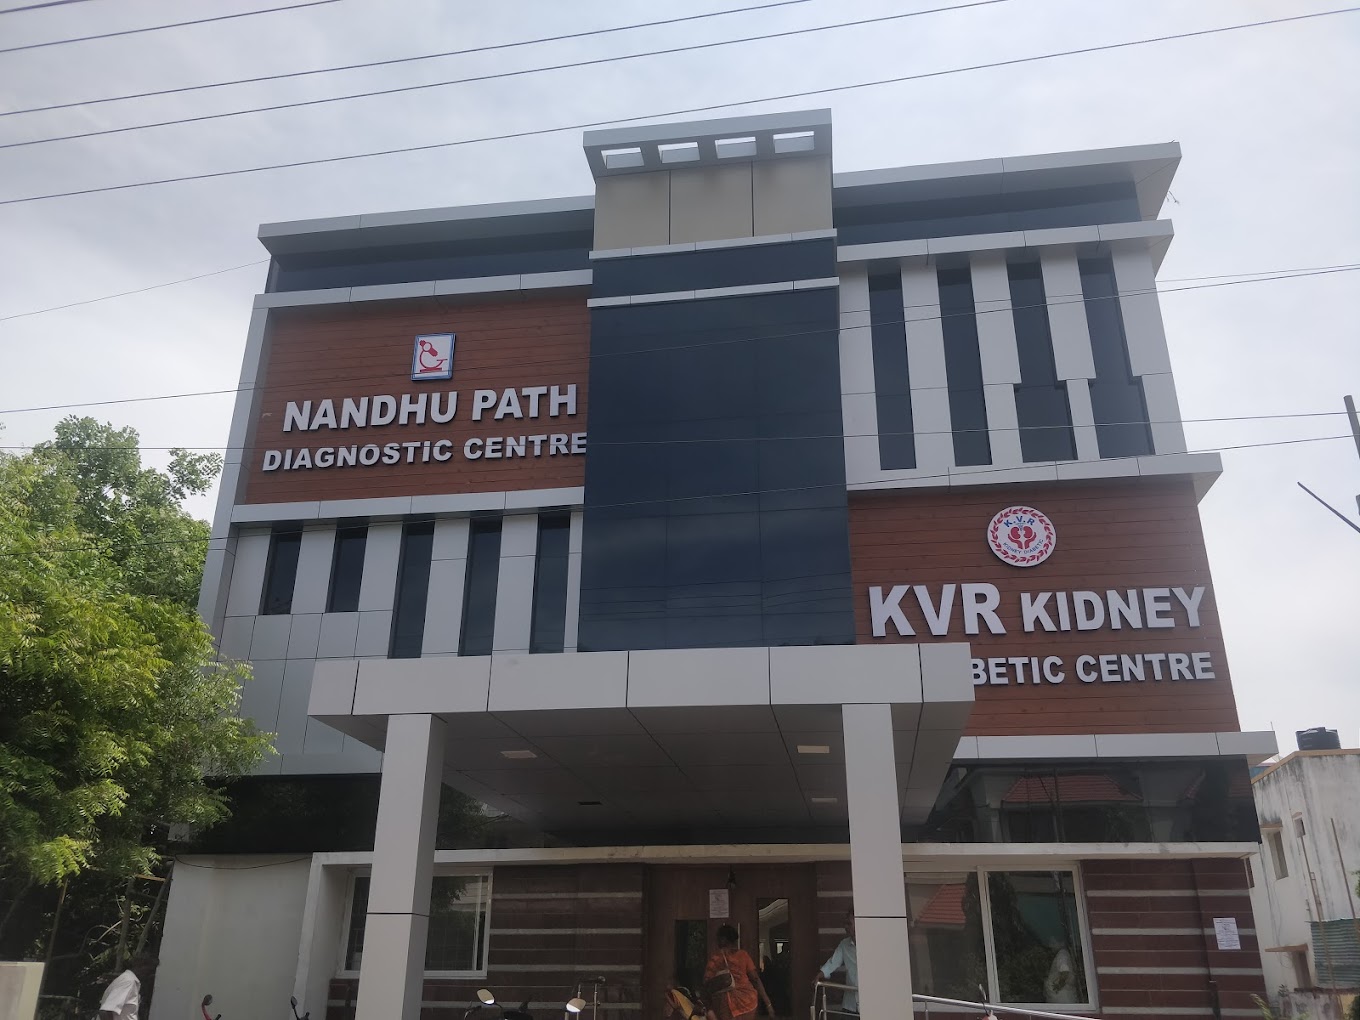 KVR Kidney & Diabetic Centre